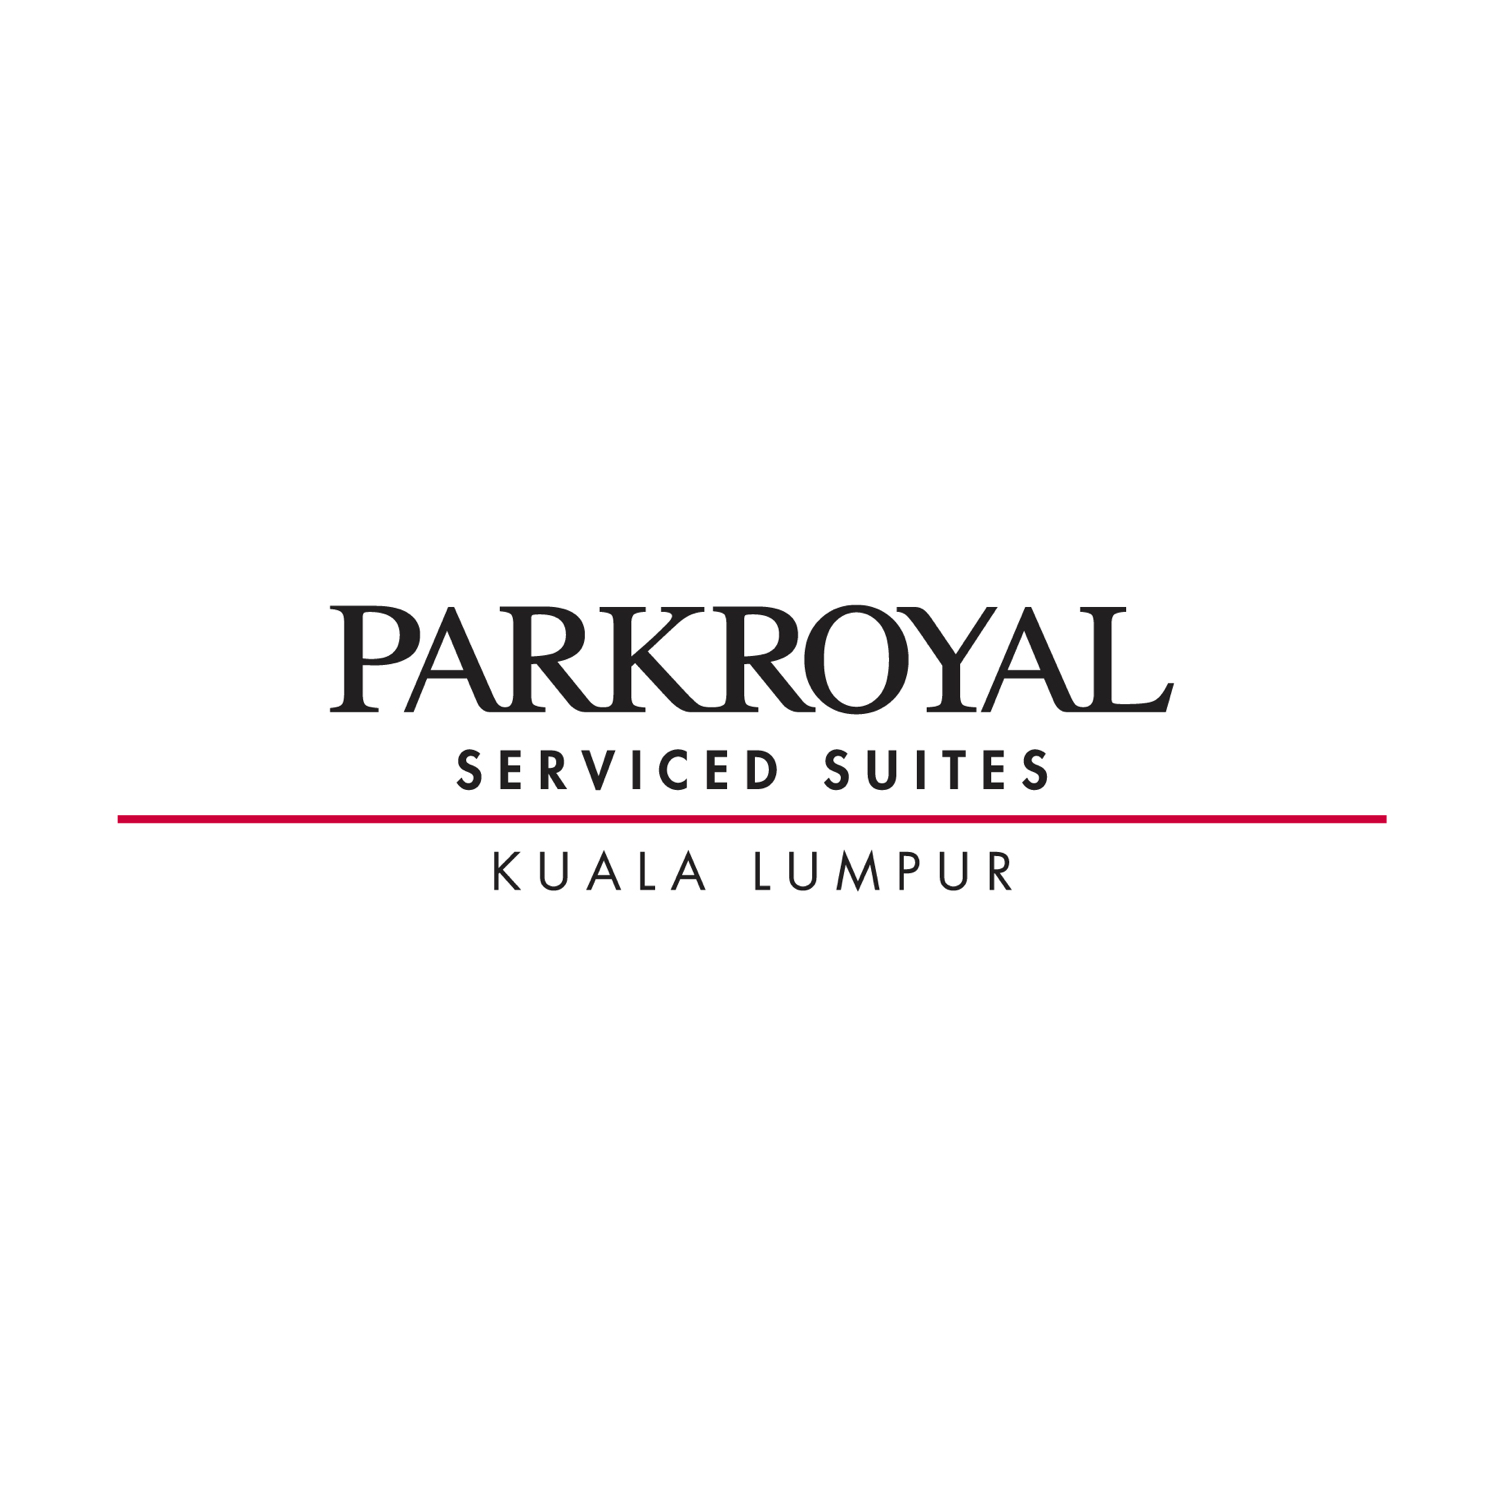 PARKROYAL Serviced Suites - Kuala Lumpur, Malaysia